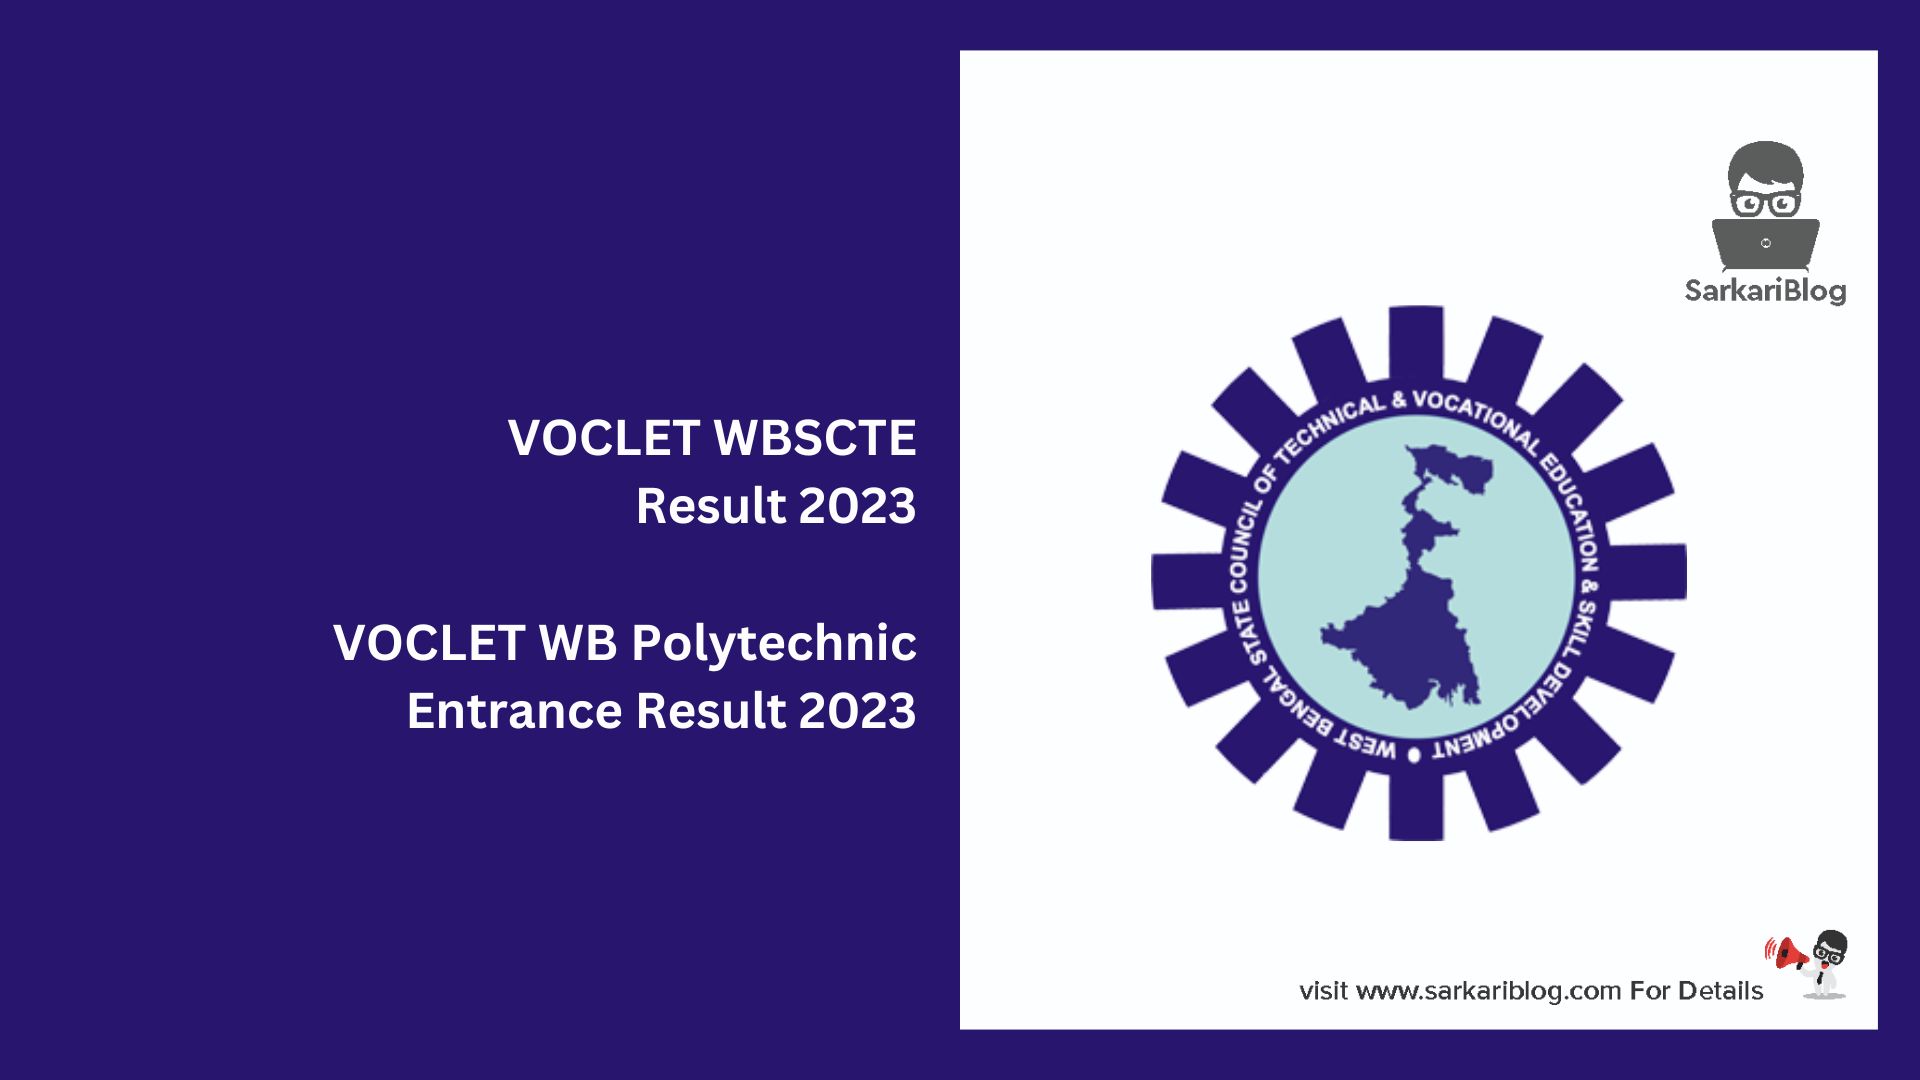 VOCLET WBSCTE Result 2023